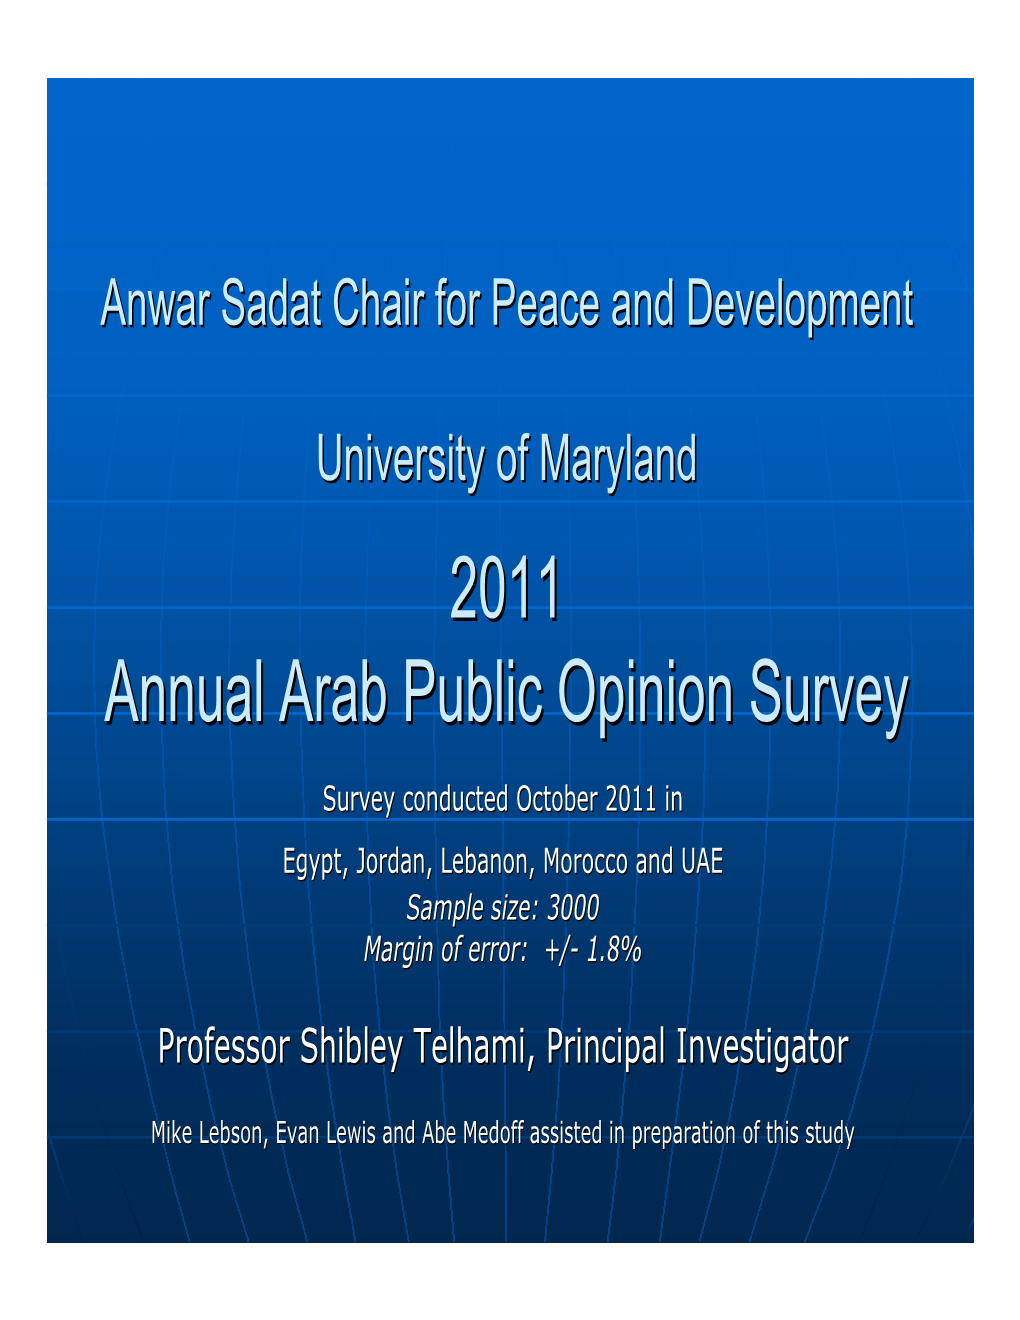 2011 Annual Arab Public Opinion Survey